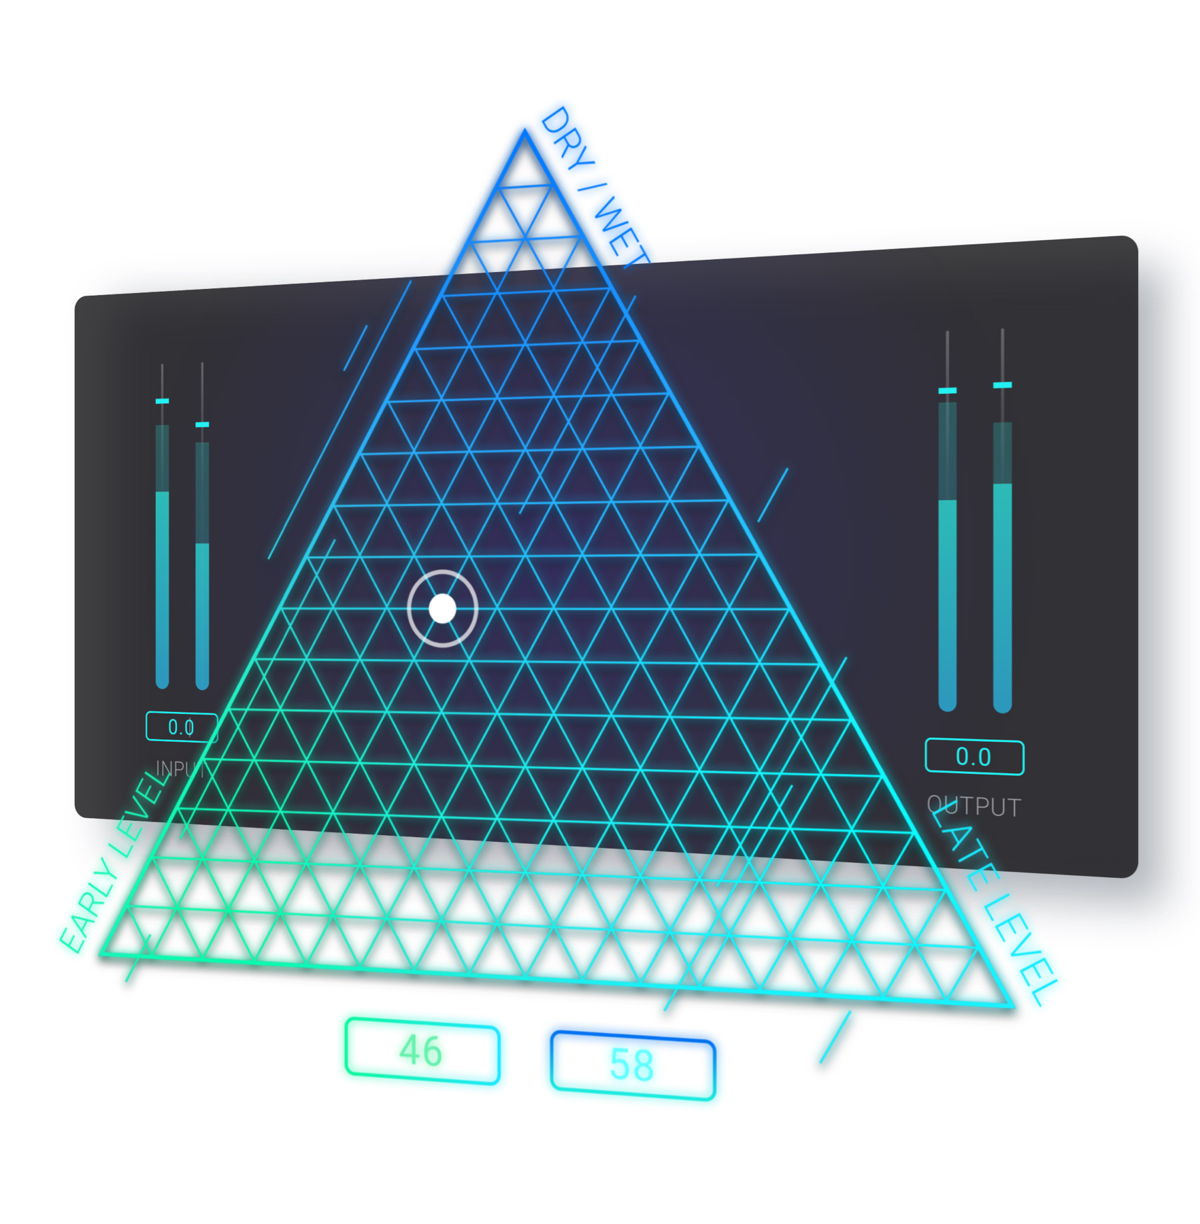 Beschleunigt den kreativen Mixing-Prozess: Mit dem innovativen Dreieckspad von EXOVERB findet man intuitiv zur perfekten Mischung